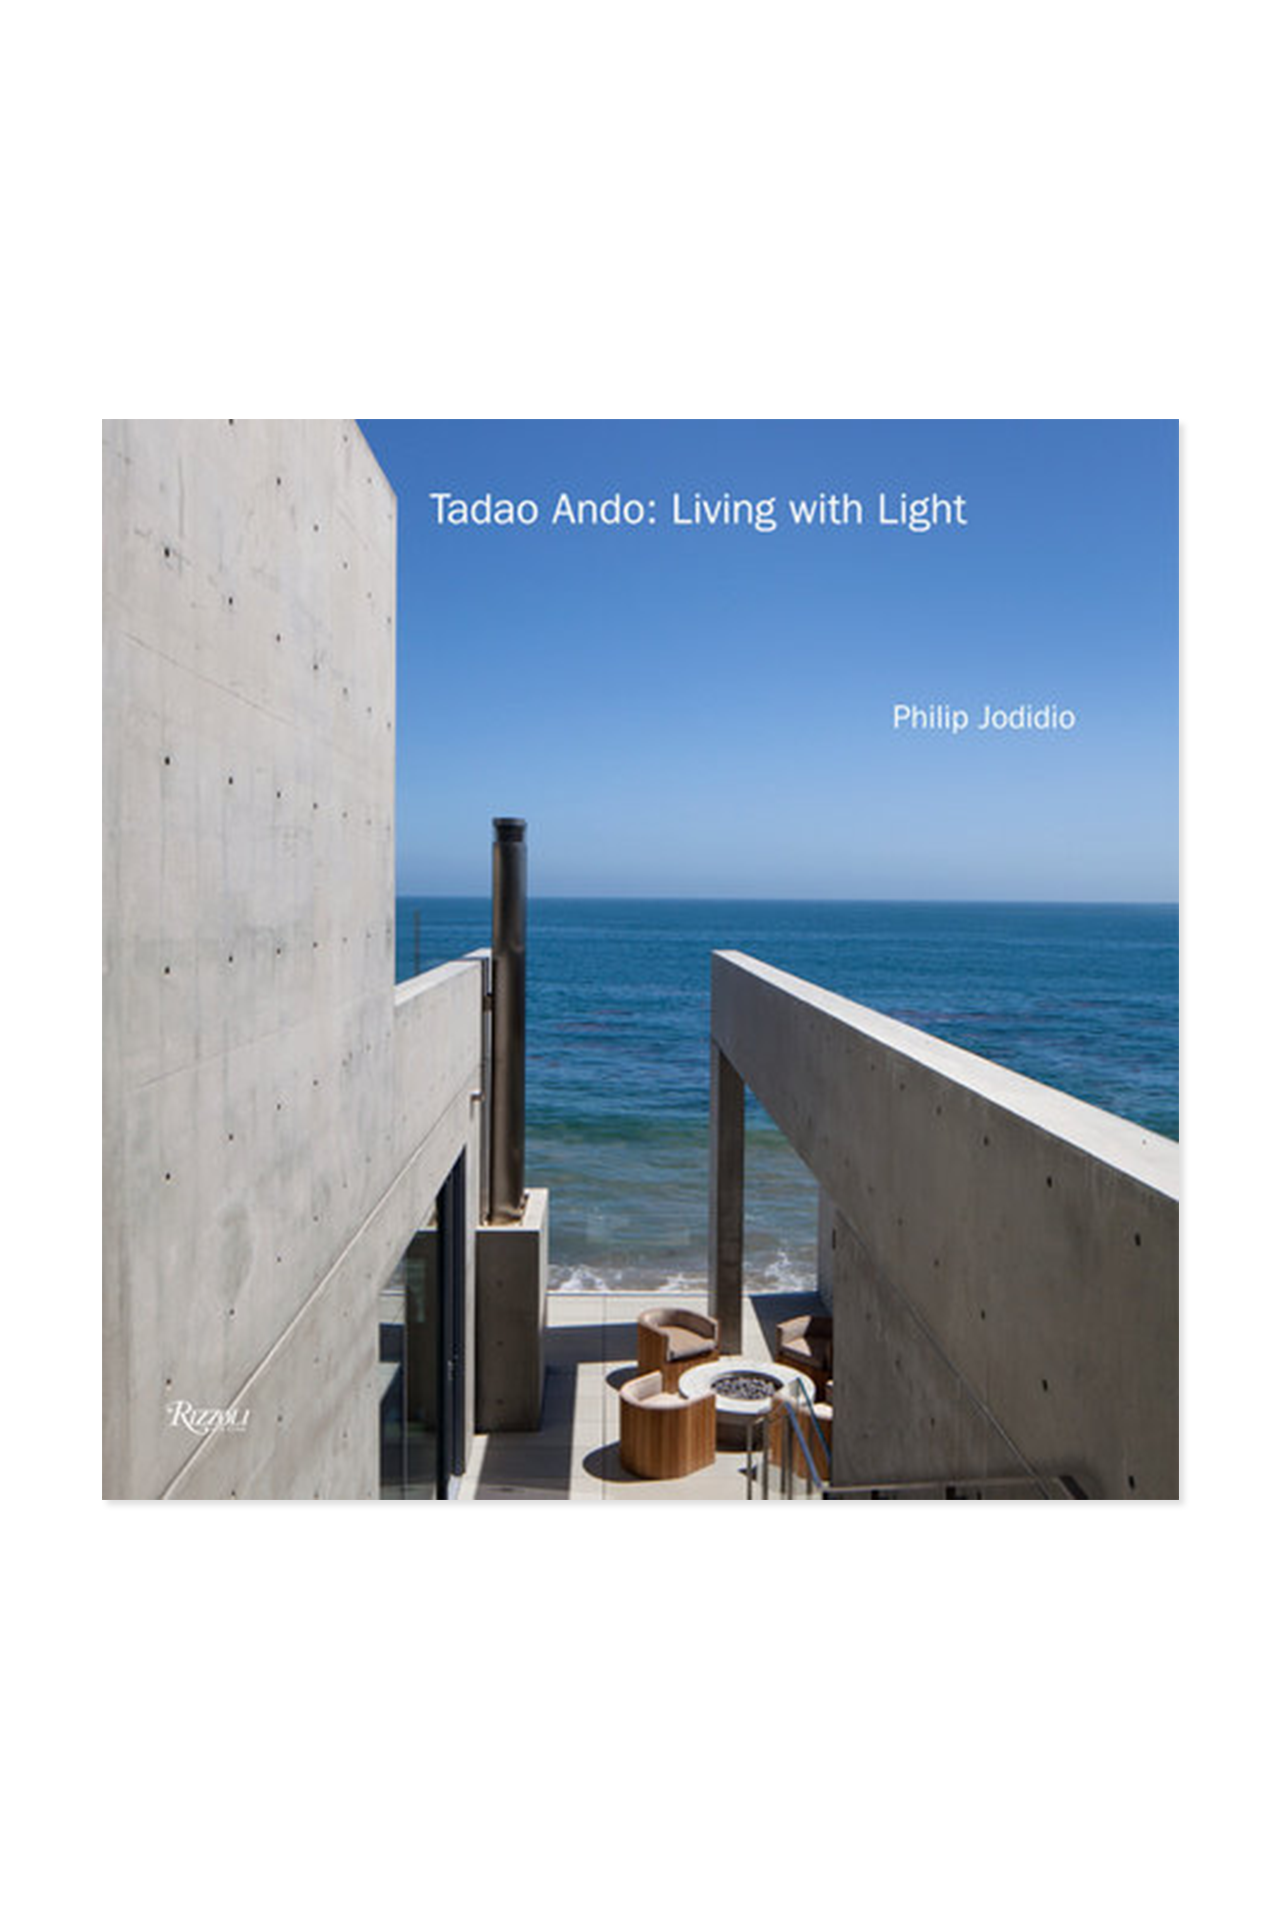 Tadao Ando: Living with Light (6550998286451)